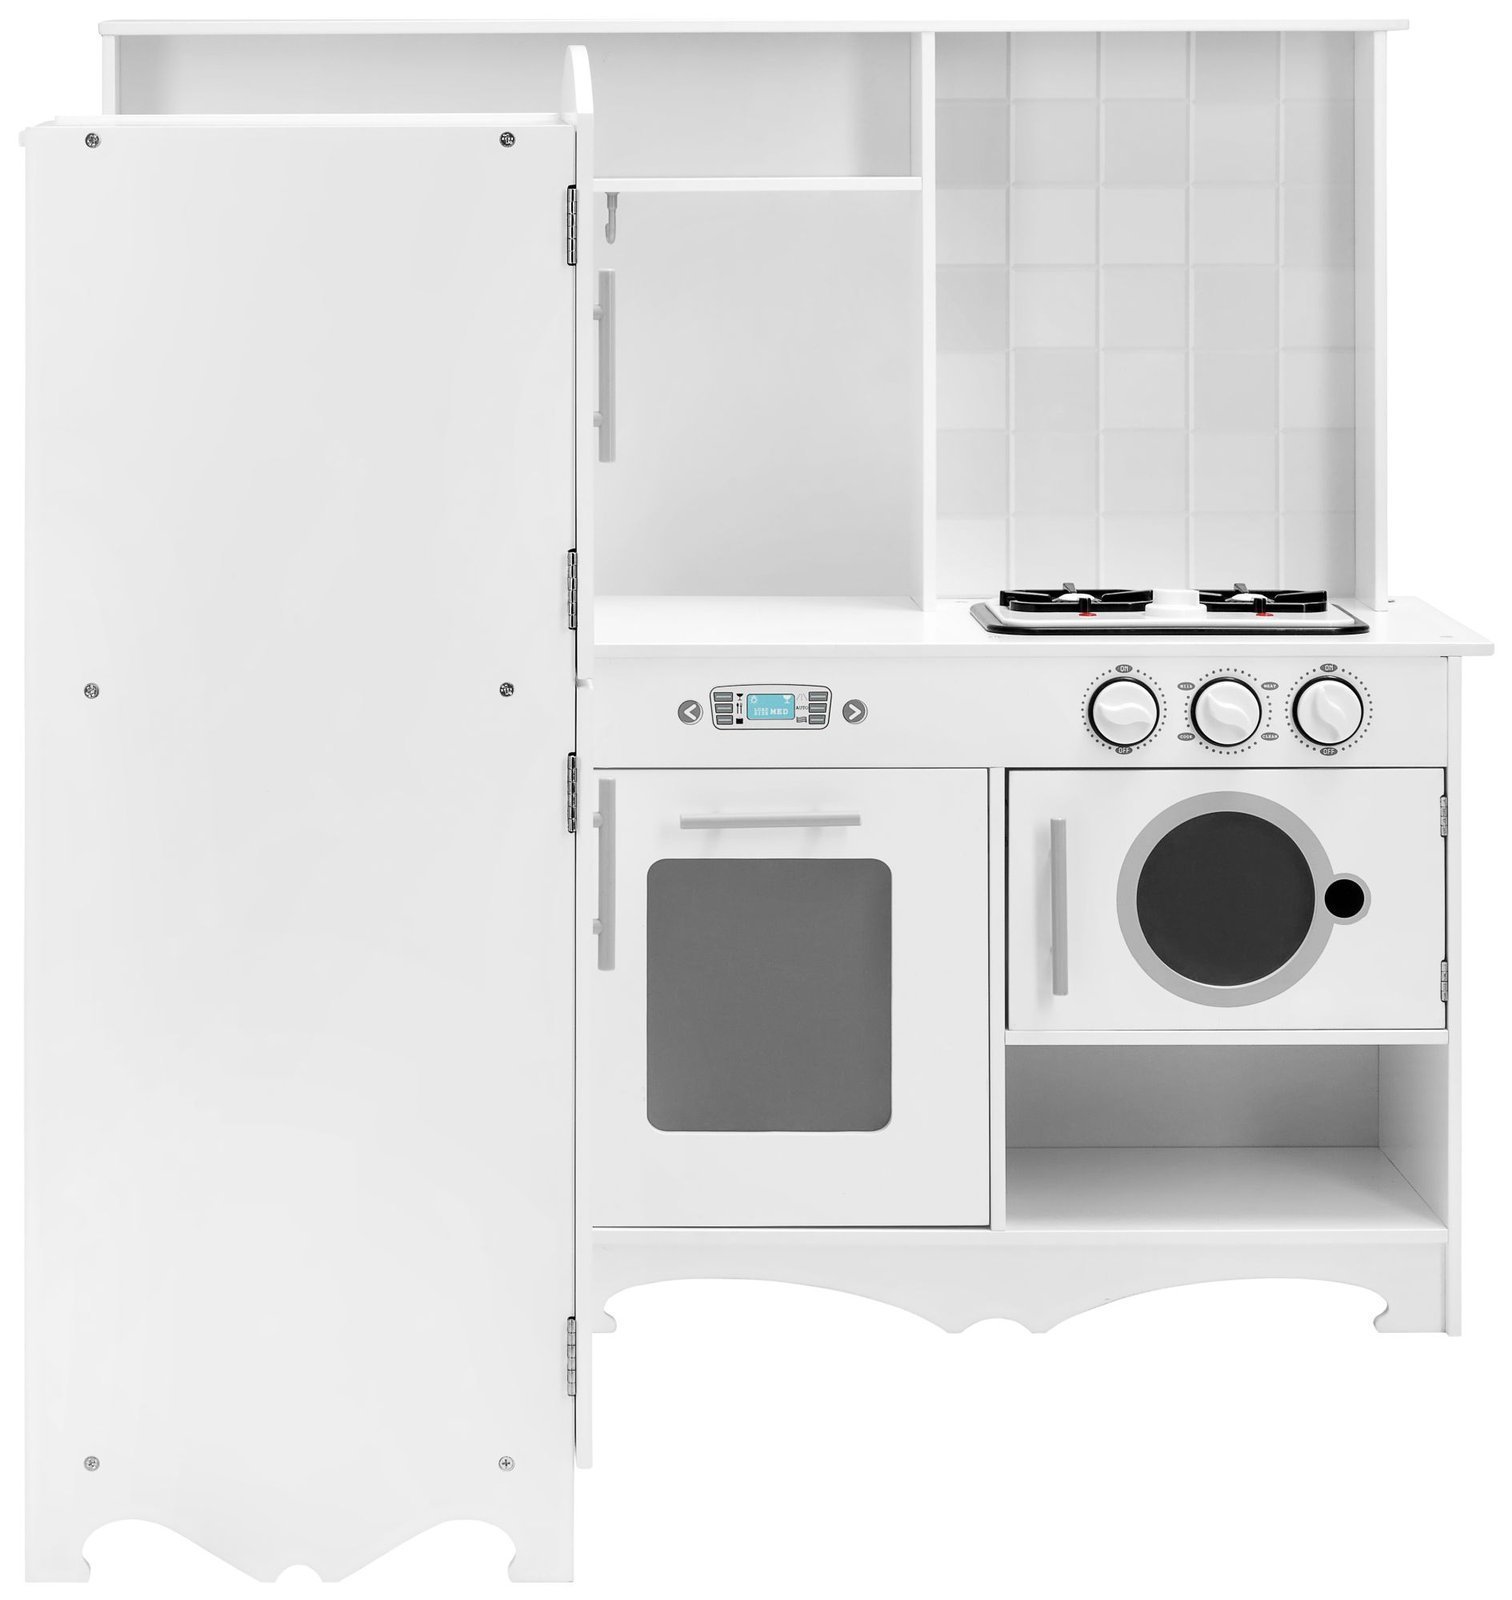 Cucina ad angolo in legno XXXL con frigorifero, forno, lavatrice, grembiule  e accessori